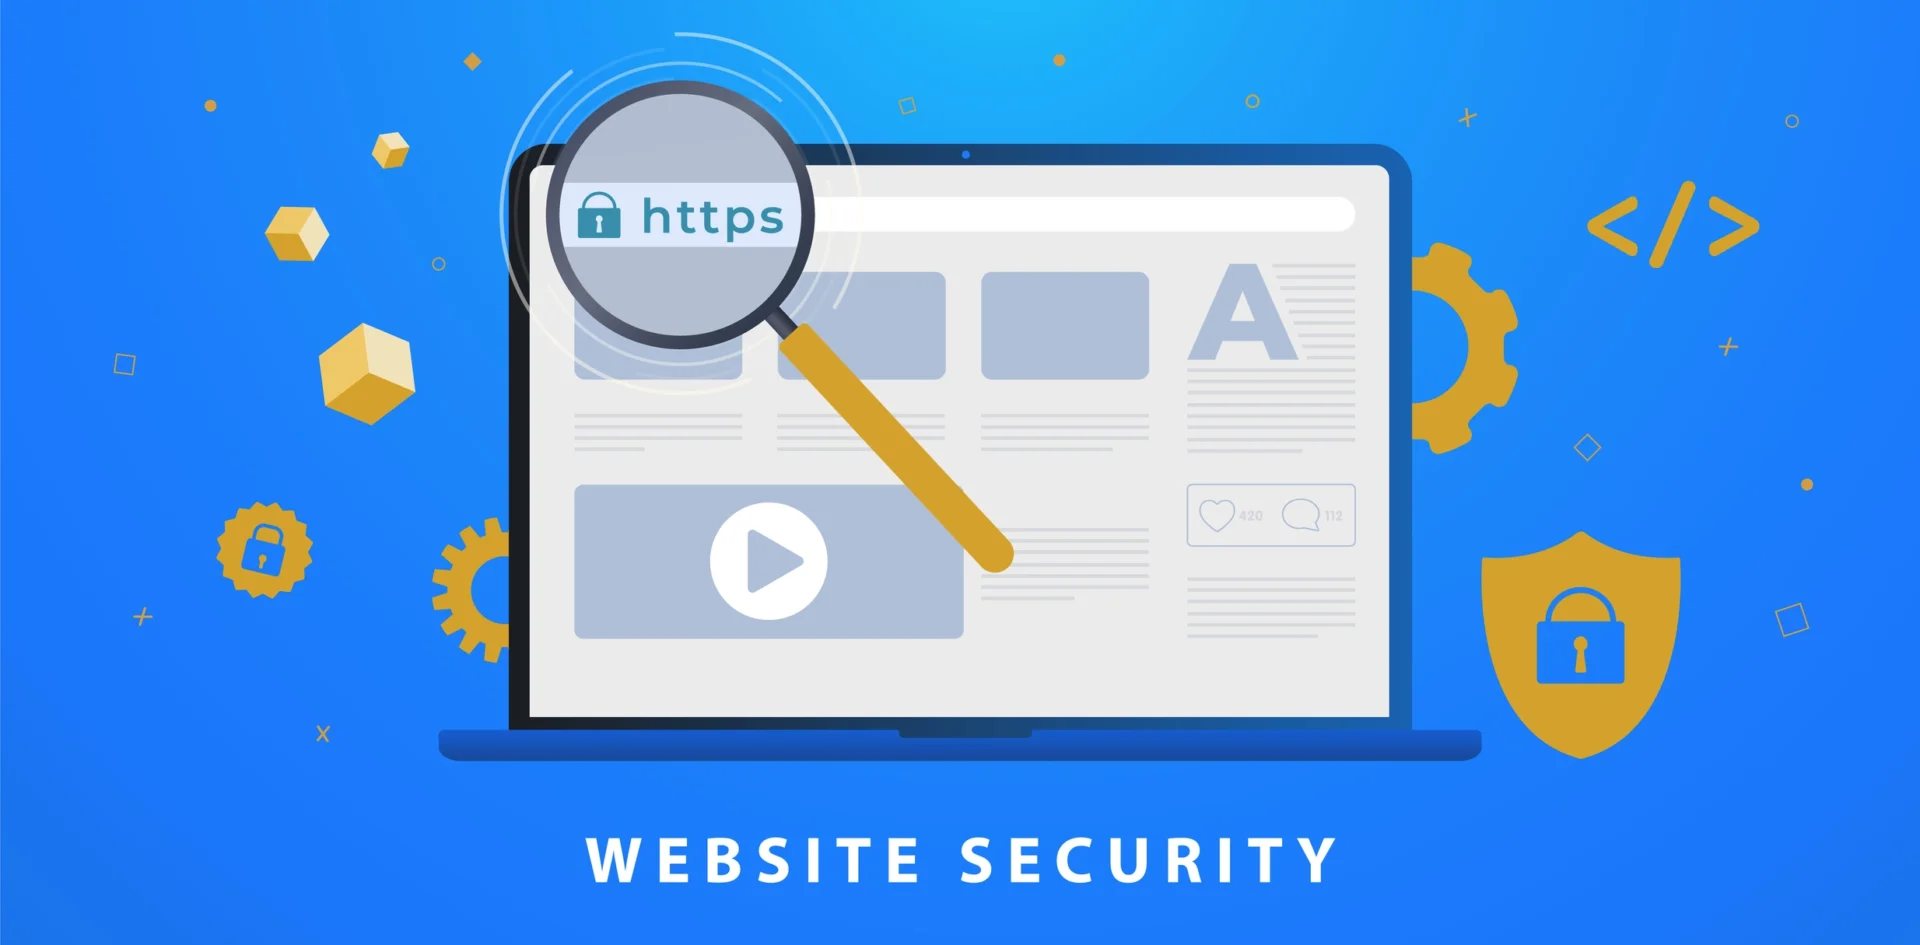 Website Security - SSL vs. TLS